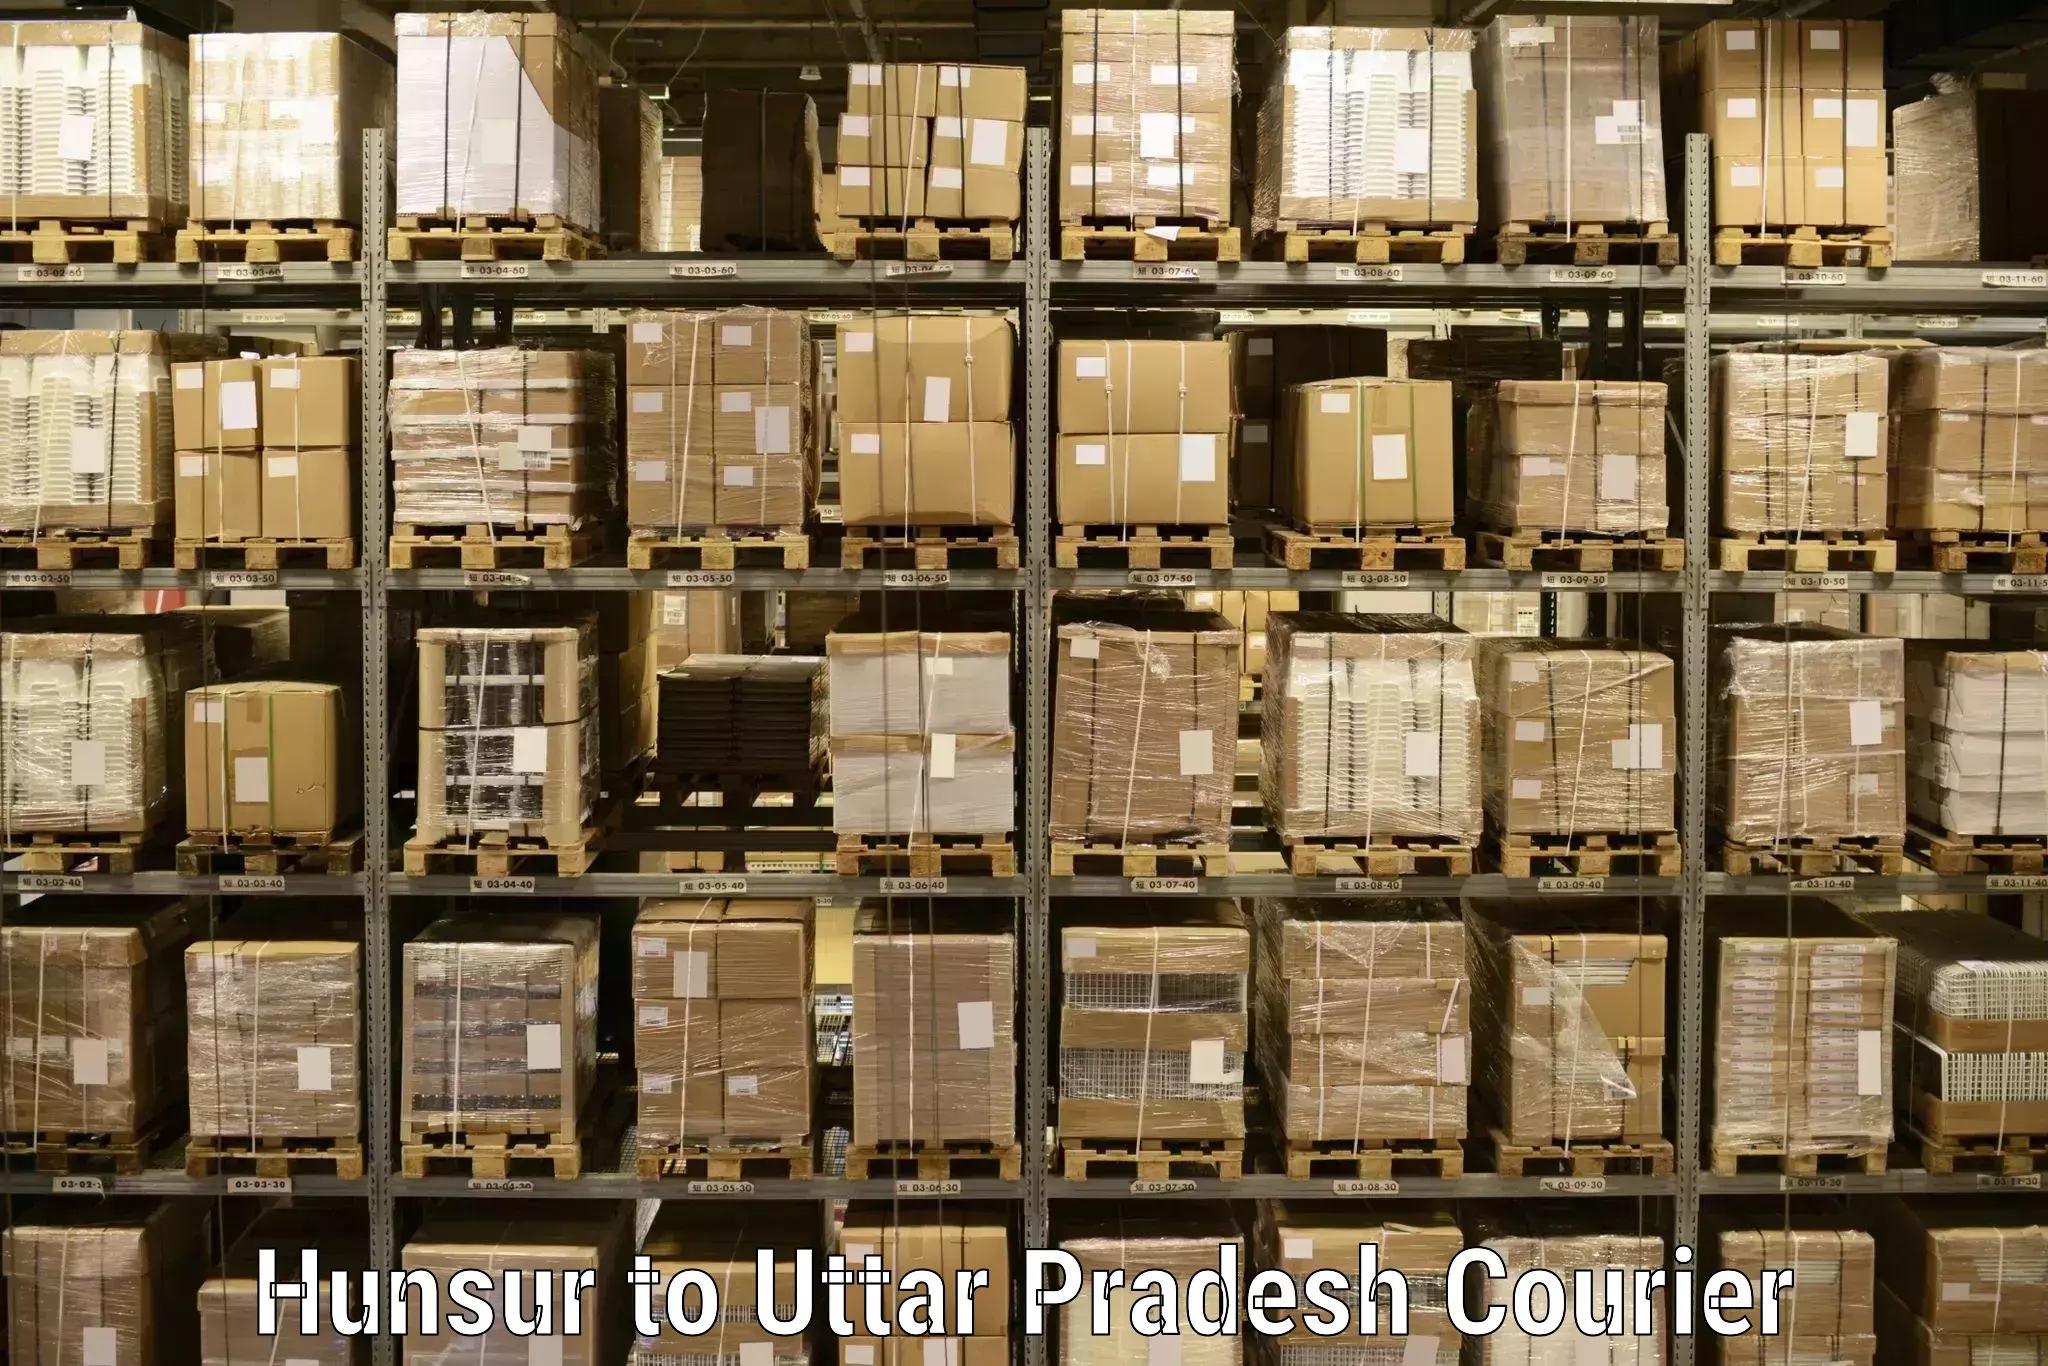 Premium courier solutions Hunsur to Sahatwar